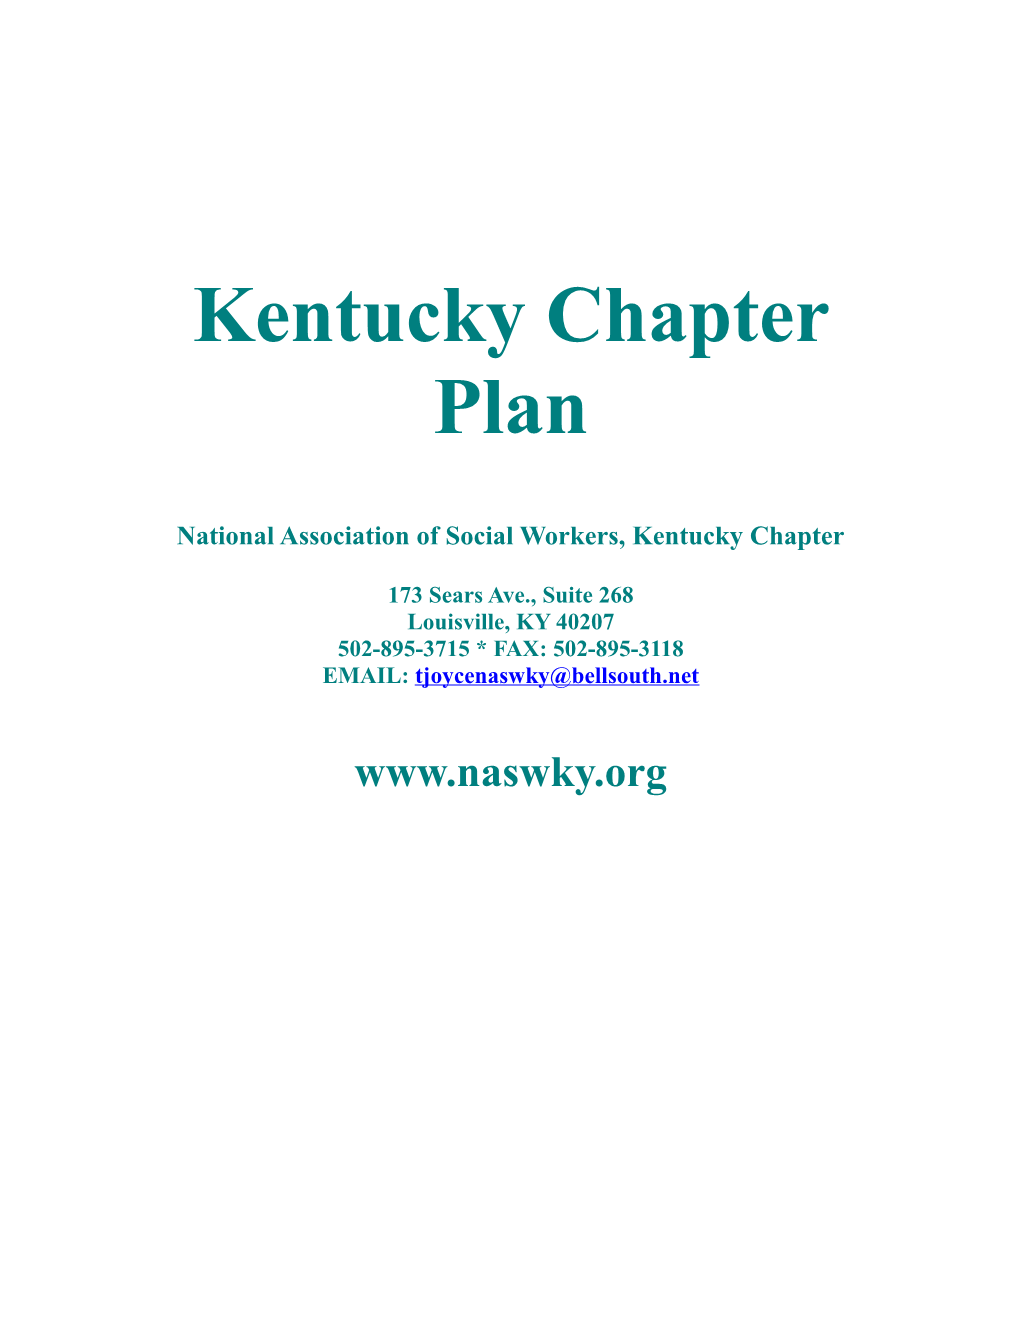 Kentucky Chapter Plan